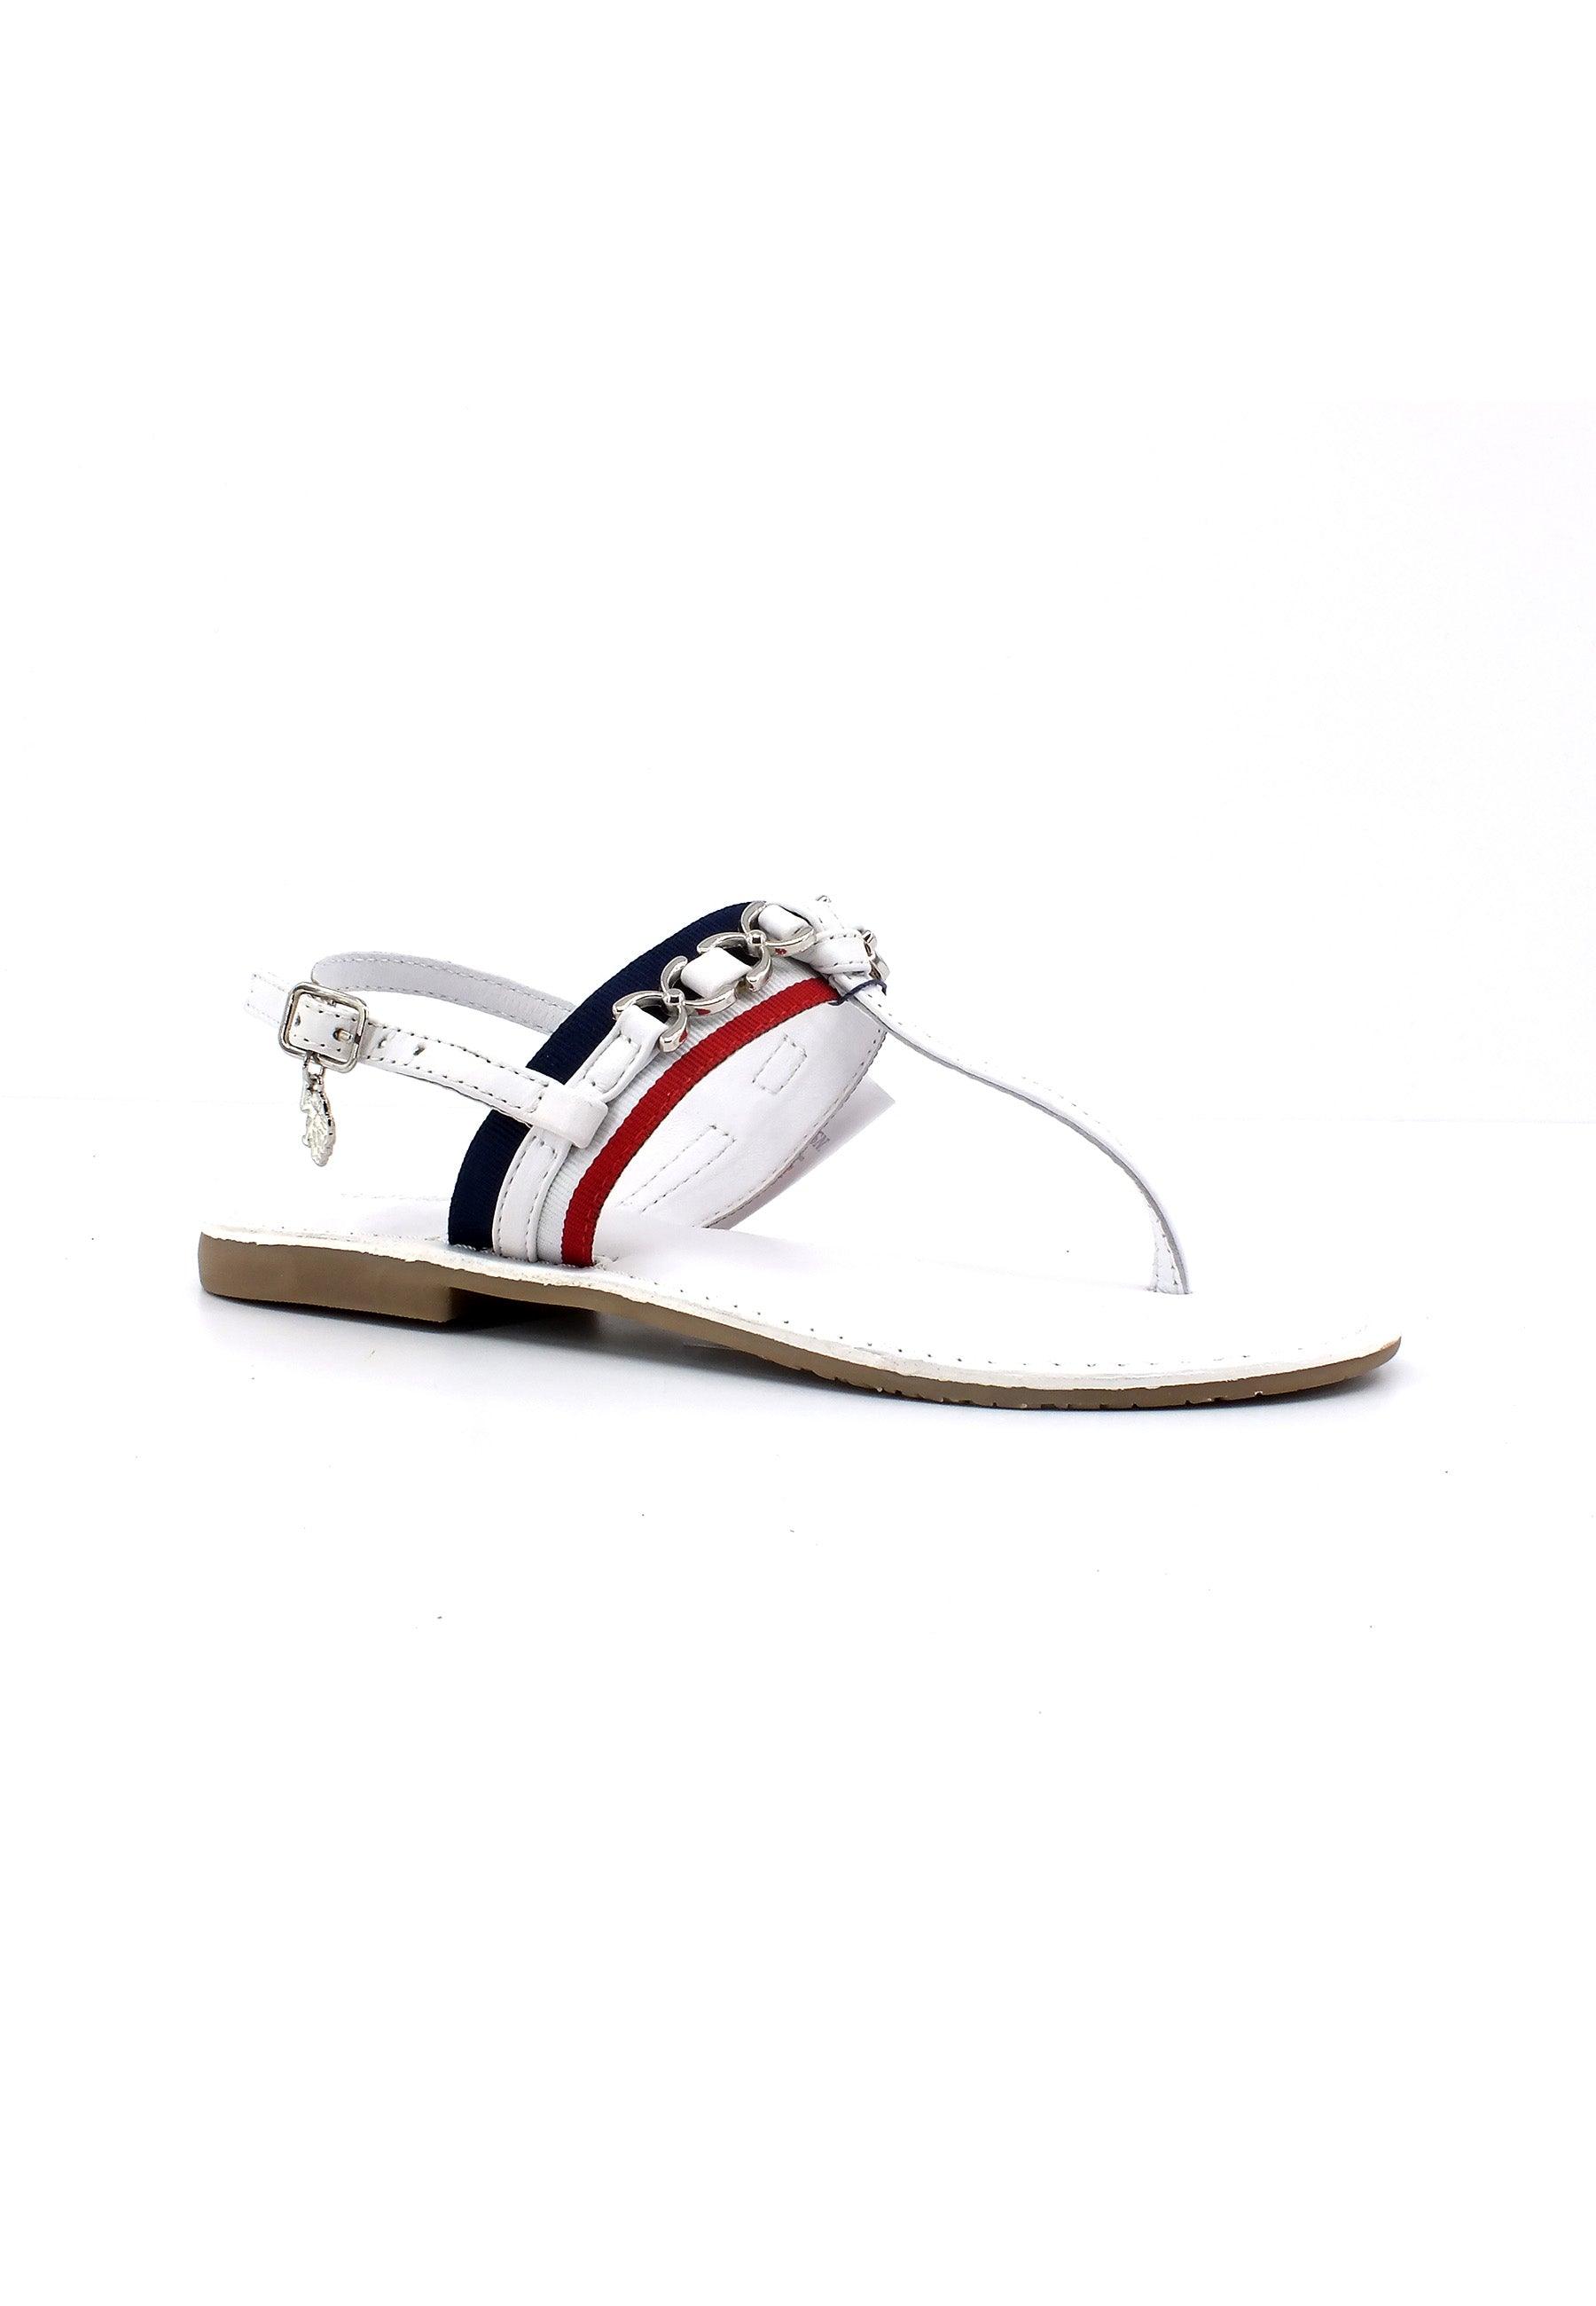 U.S. POLO ASSN. Sandalo Infradito Donna White Red LINDA002 - Sandrini Calzature e Abbigliamento